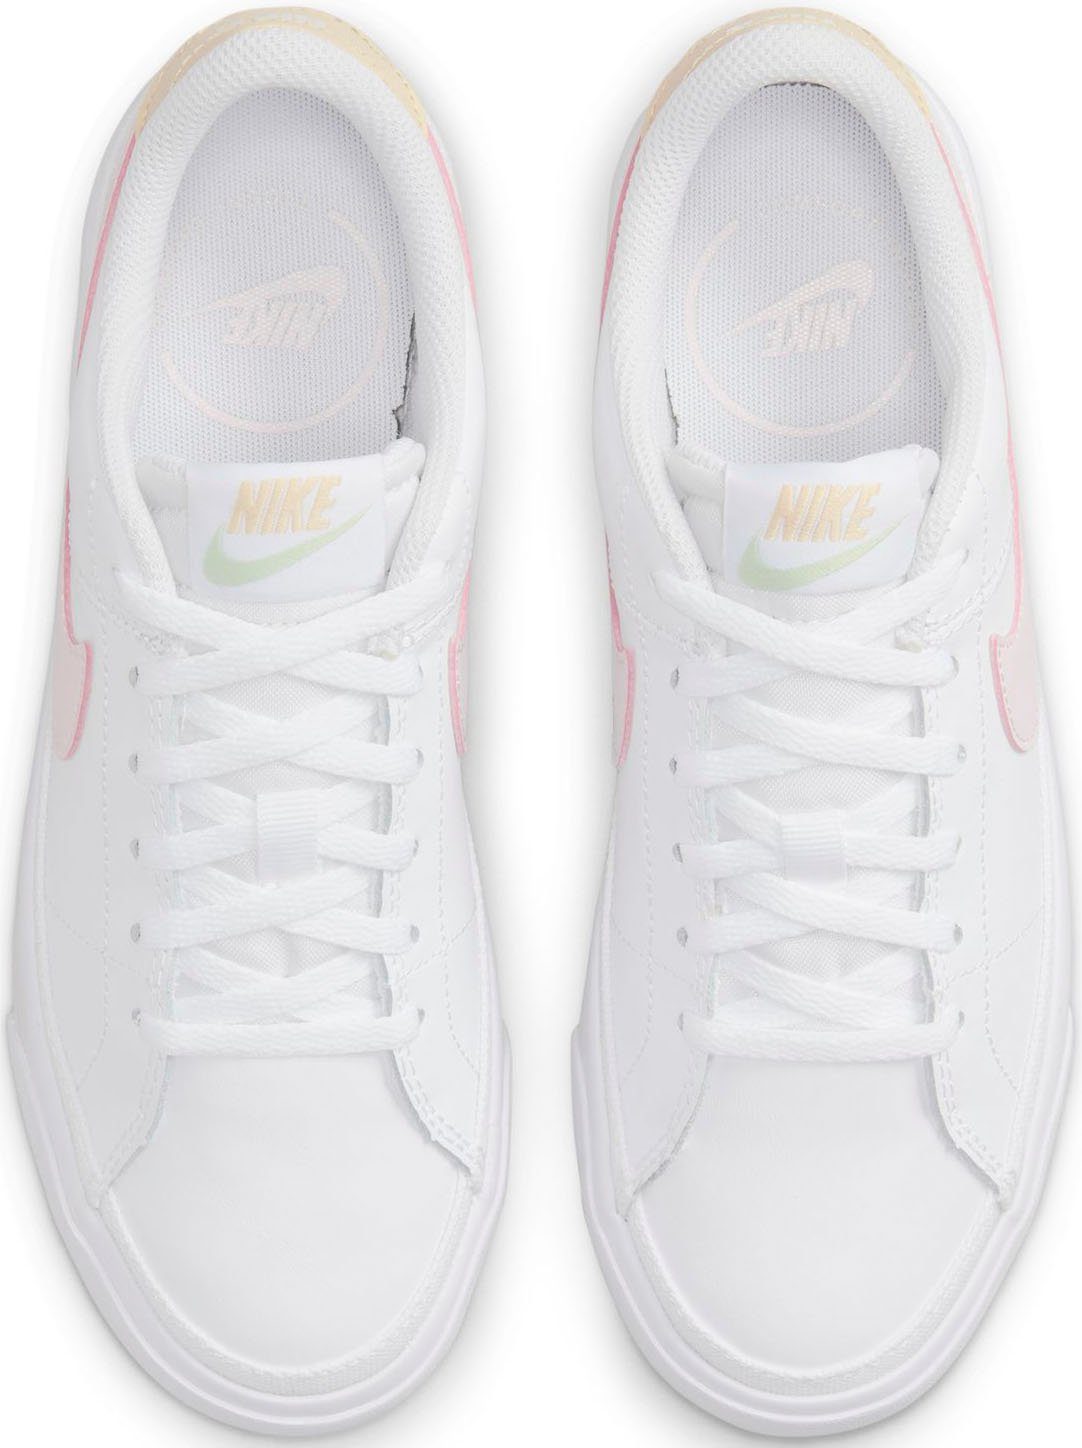 COURT weiß-pink (GS) LEGACY Nike Sneaker Sportswear